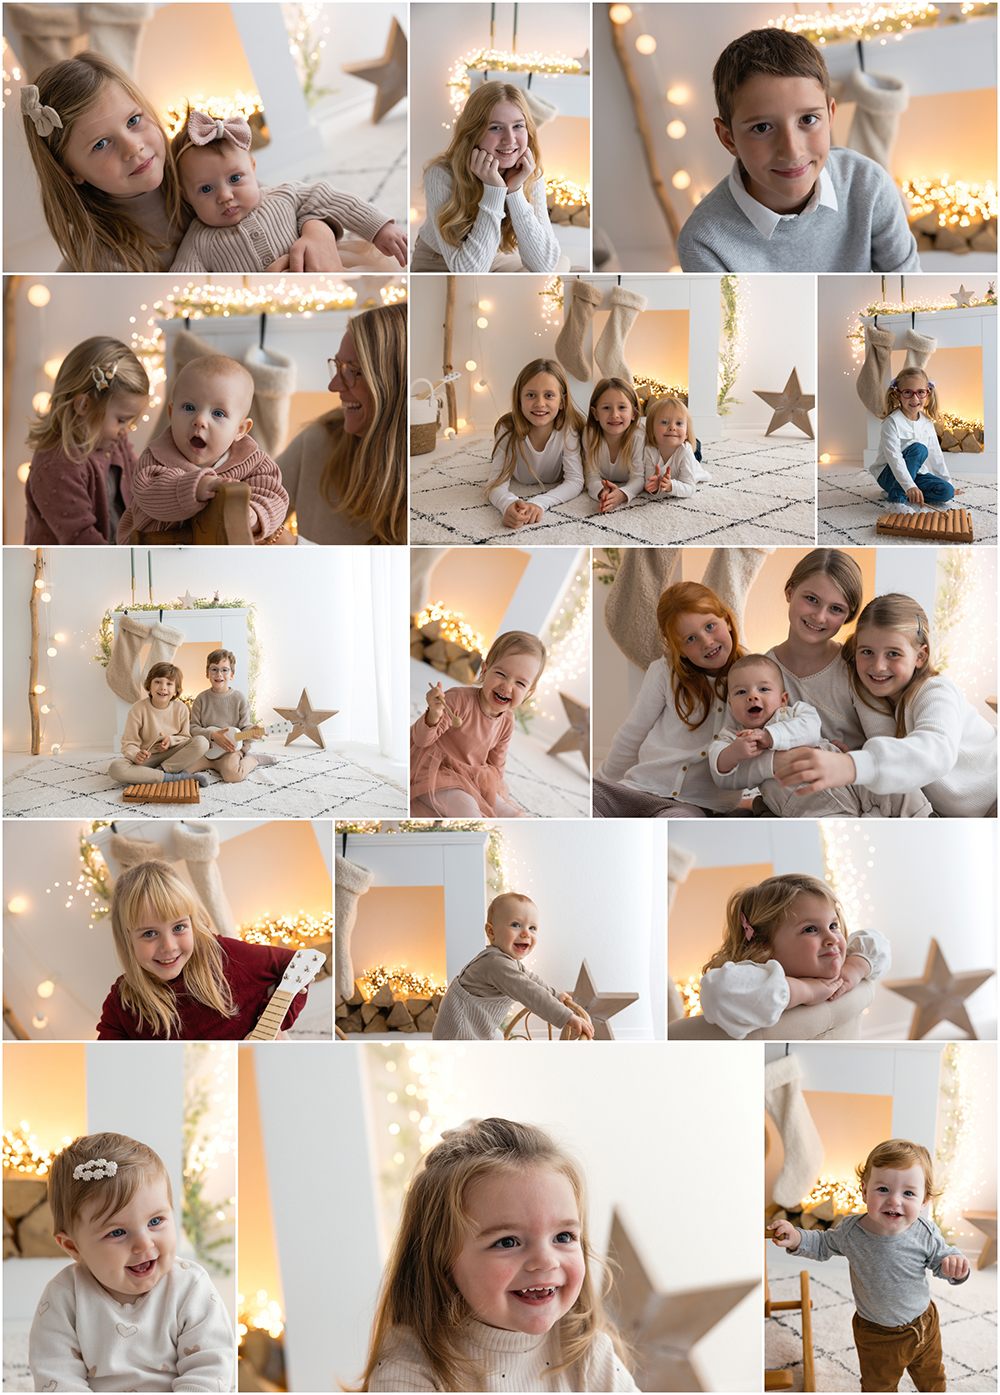 Britta-Passmann-Fotografie-Dortmund-Neugeborenenfotos-Newbornfotos-Babyfotos-Fotoshooting-Weihnachtsfotos